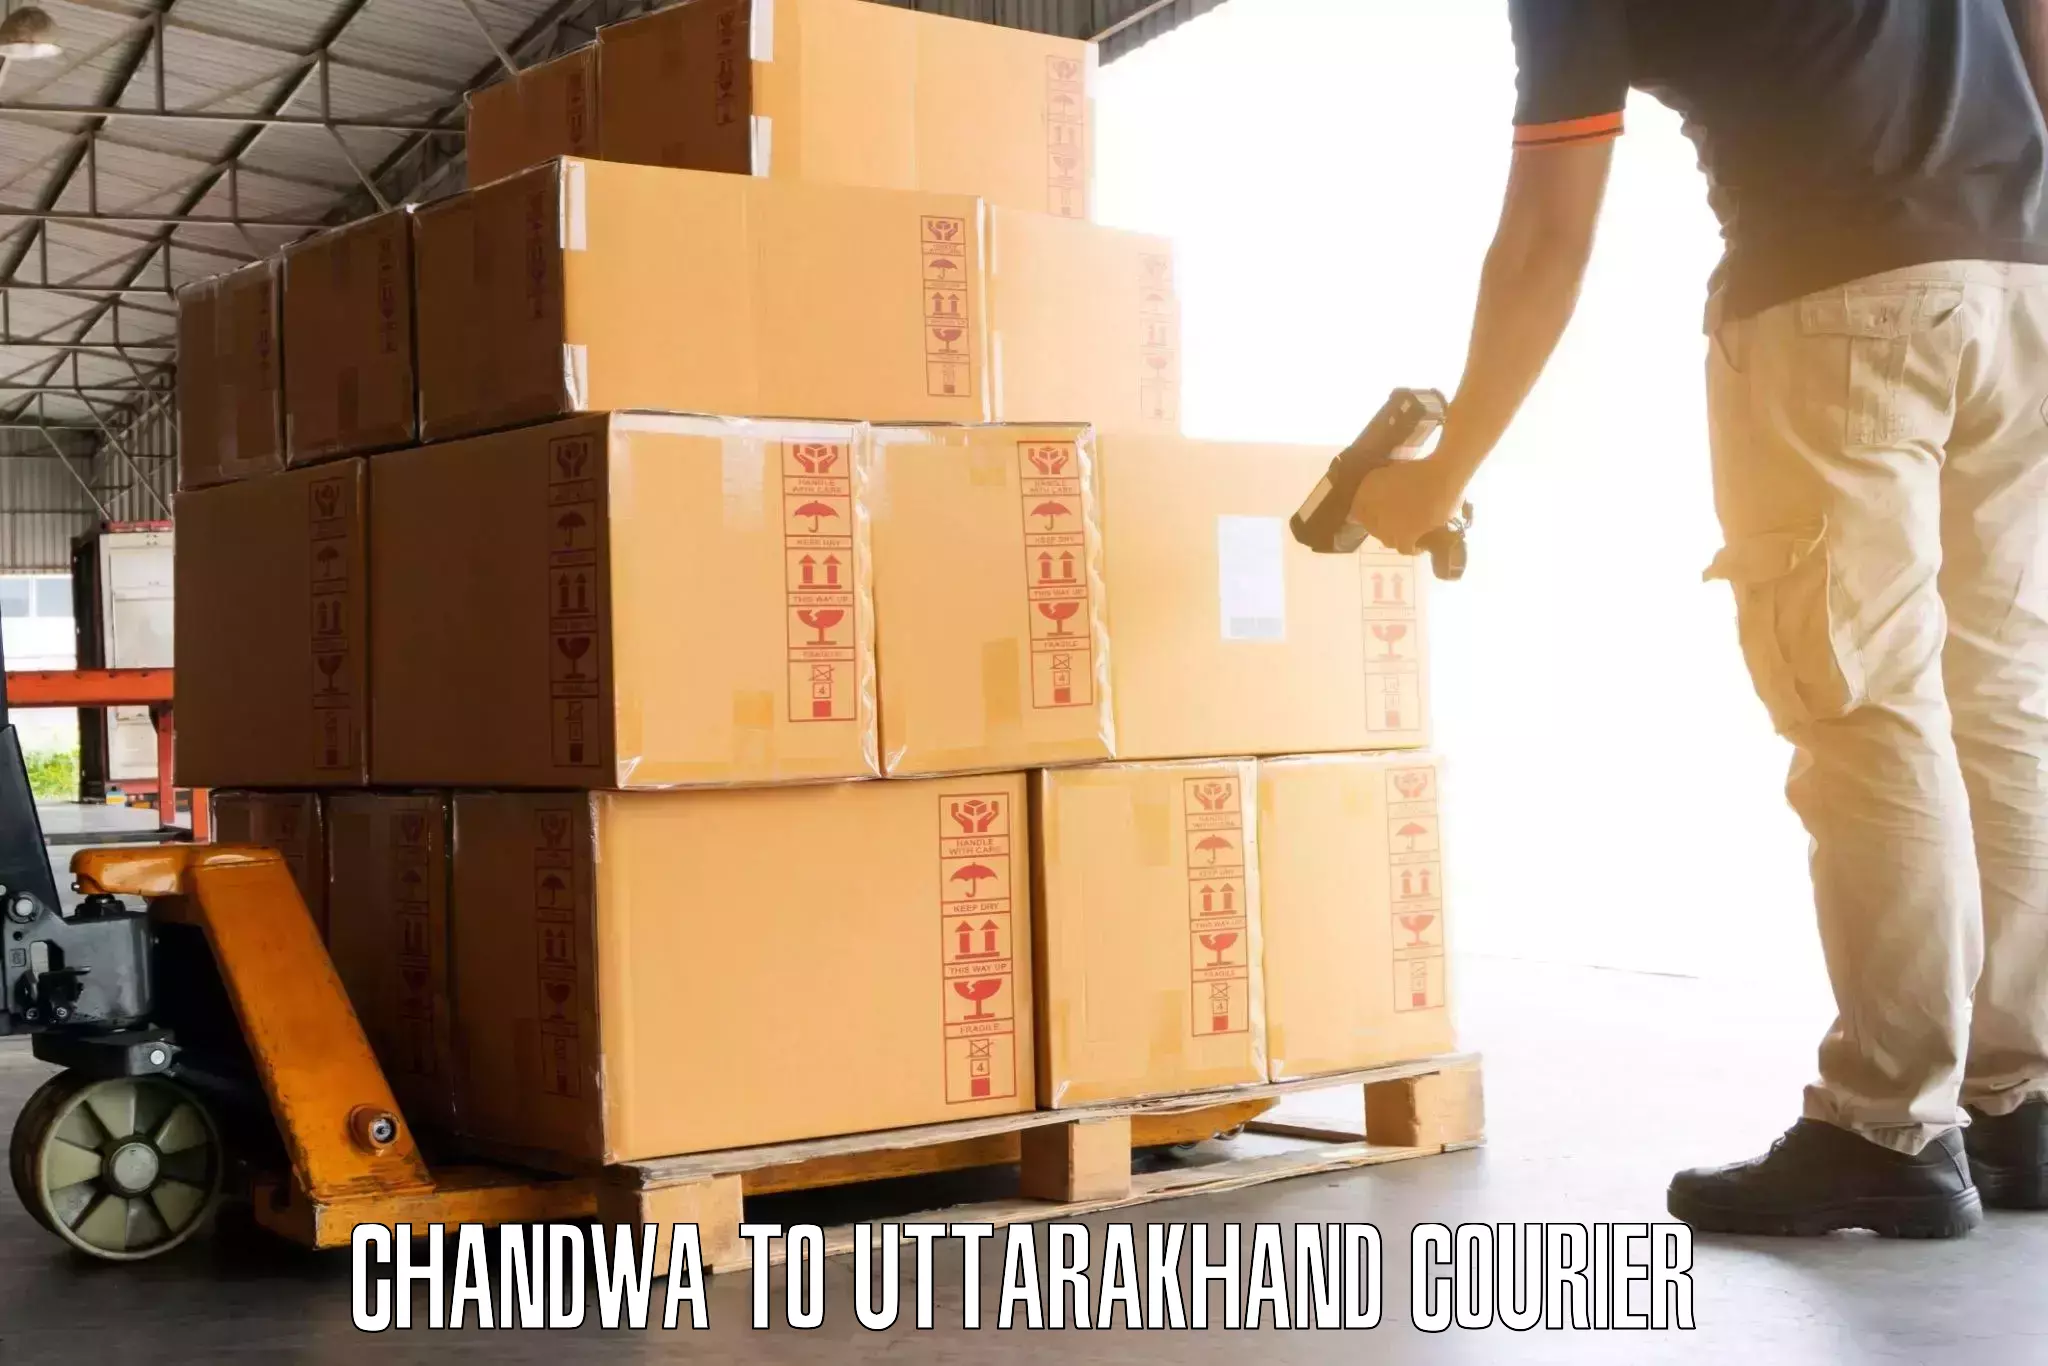 Luggage shipping estimate Chandwa to Rishikesh